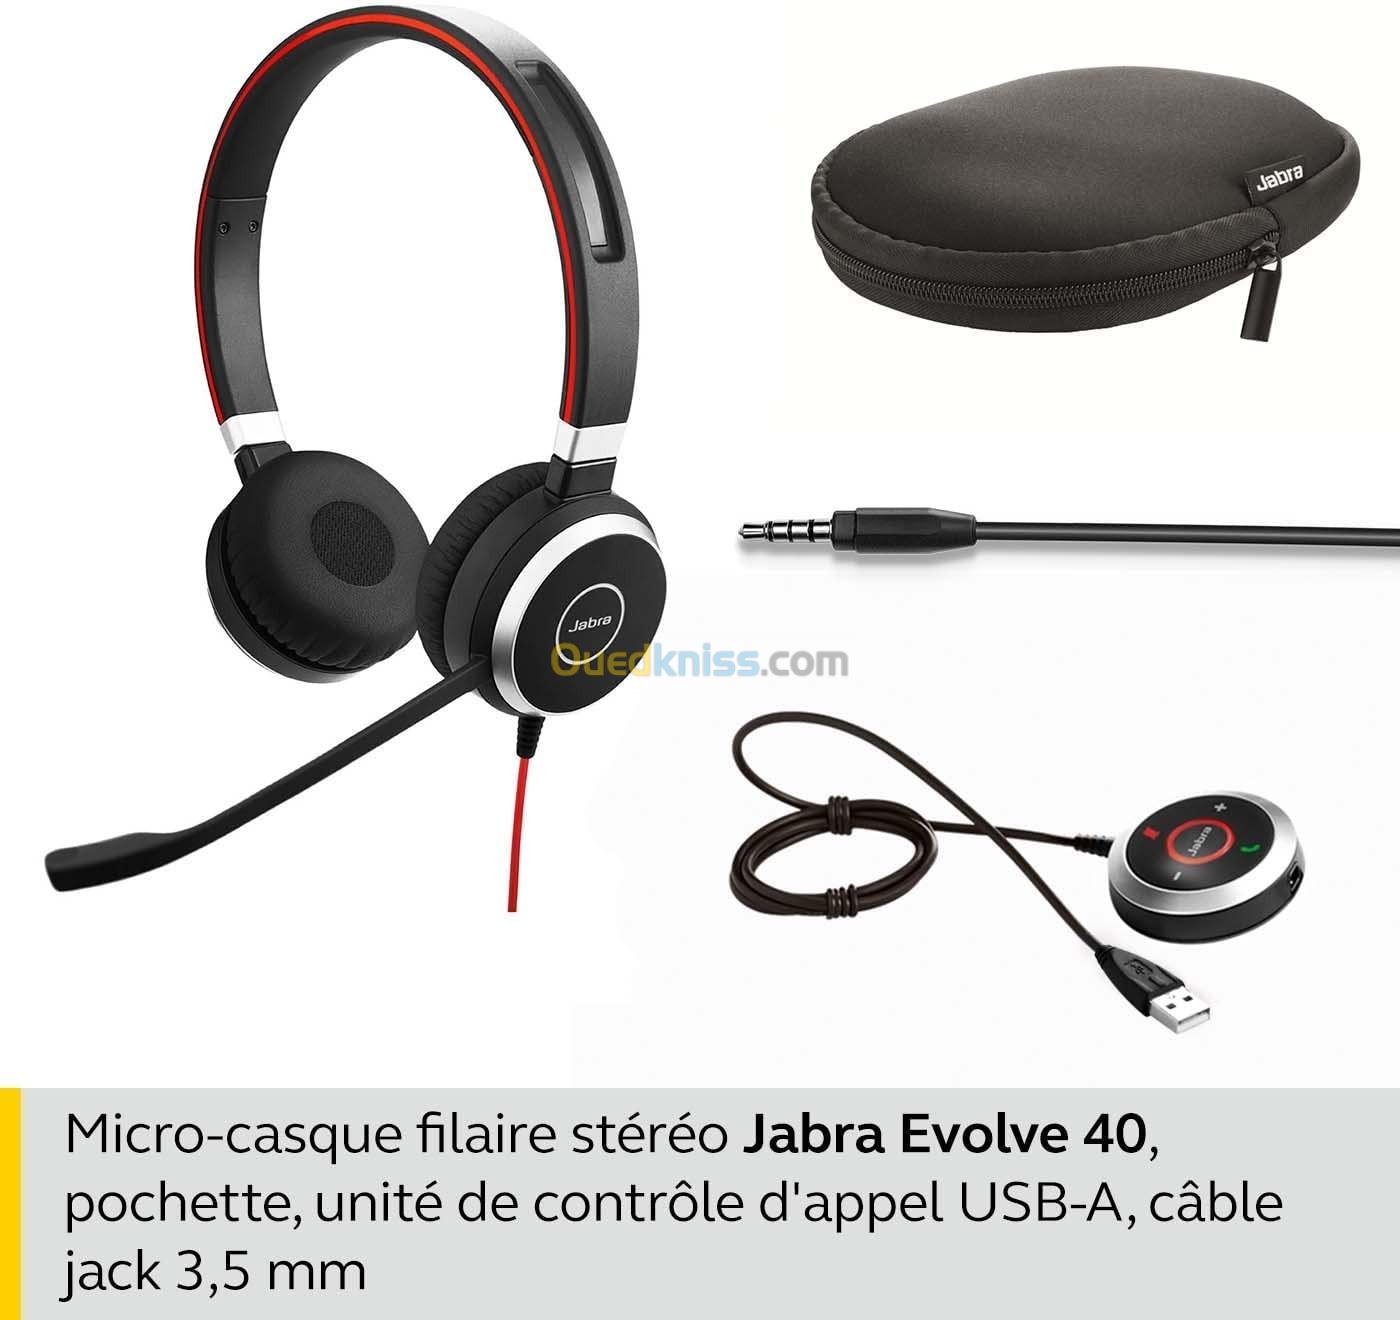 Jabra Evolve 40  Stéréo Casque filaire pour softphone  USB 